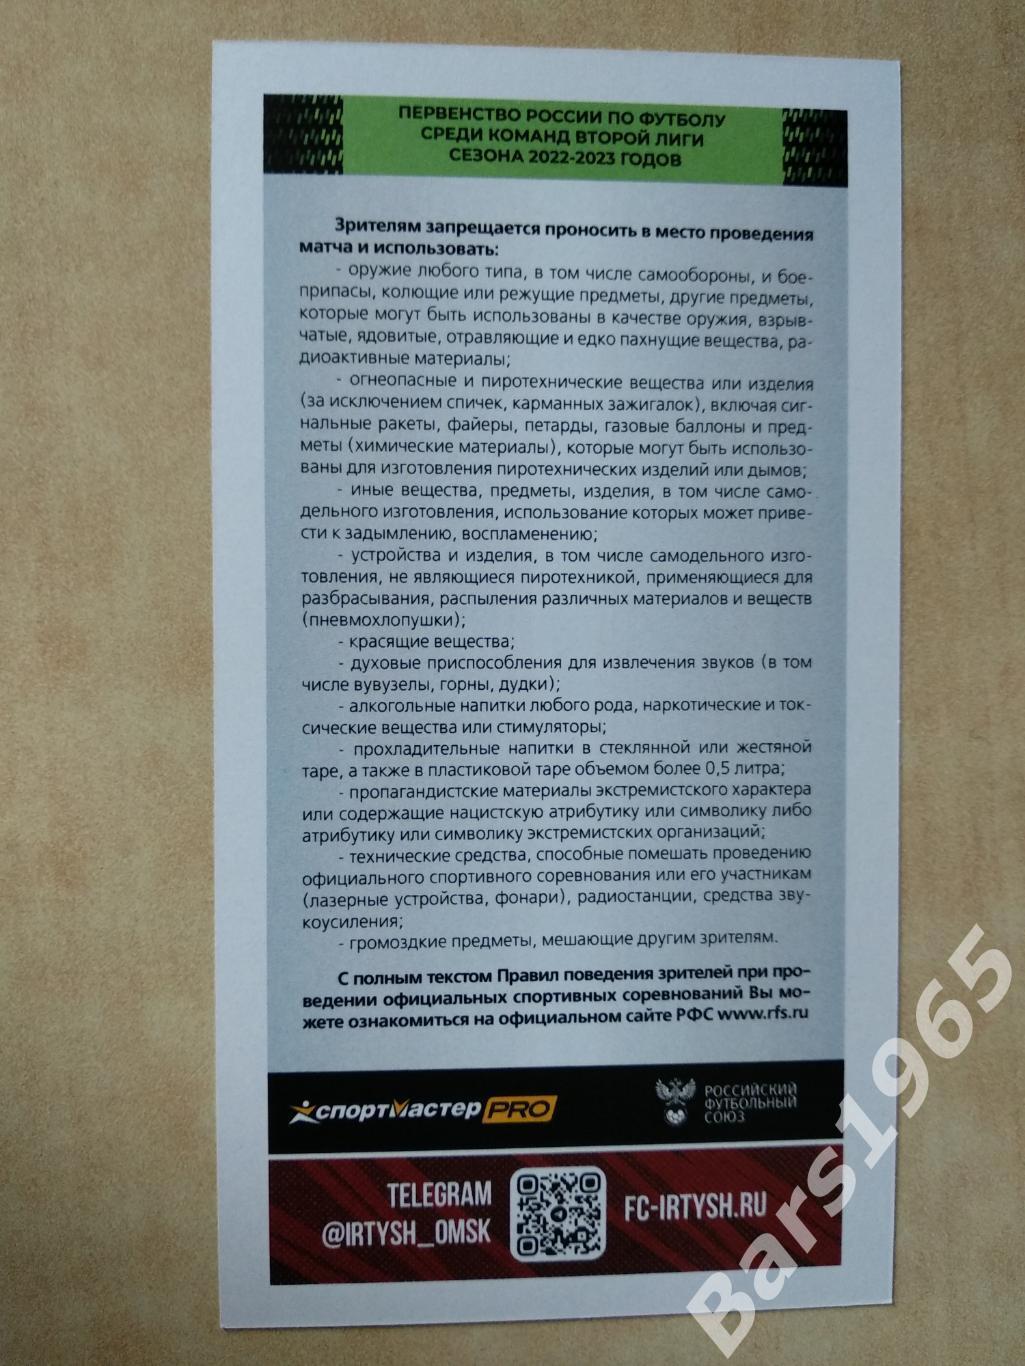 Иртыш Омск - Челябинск 2022 Билет 1